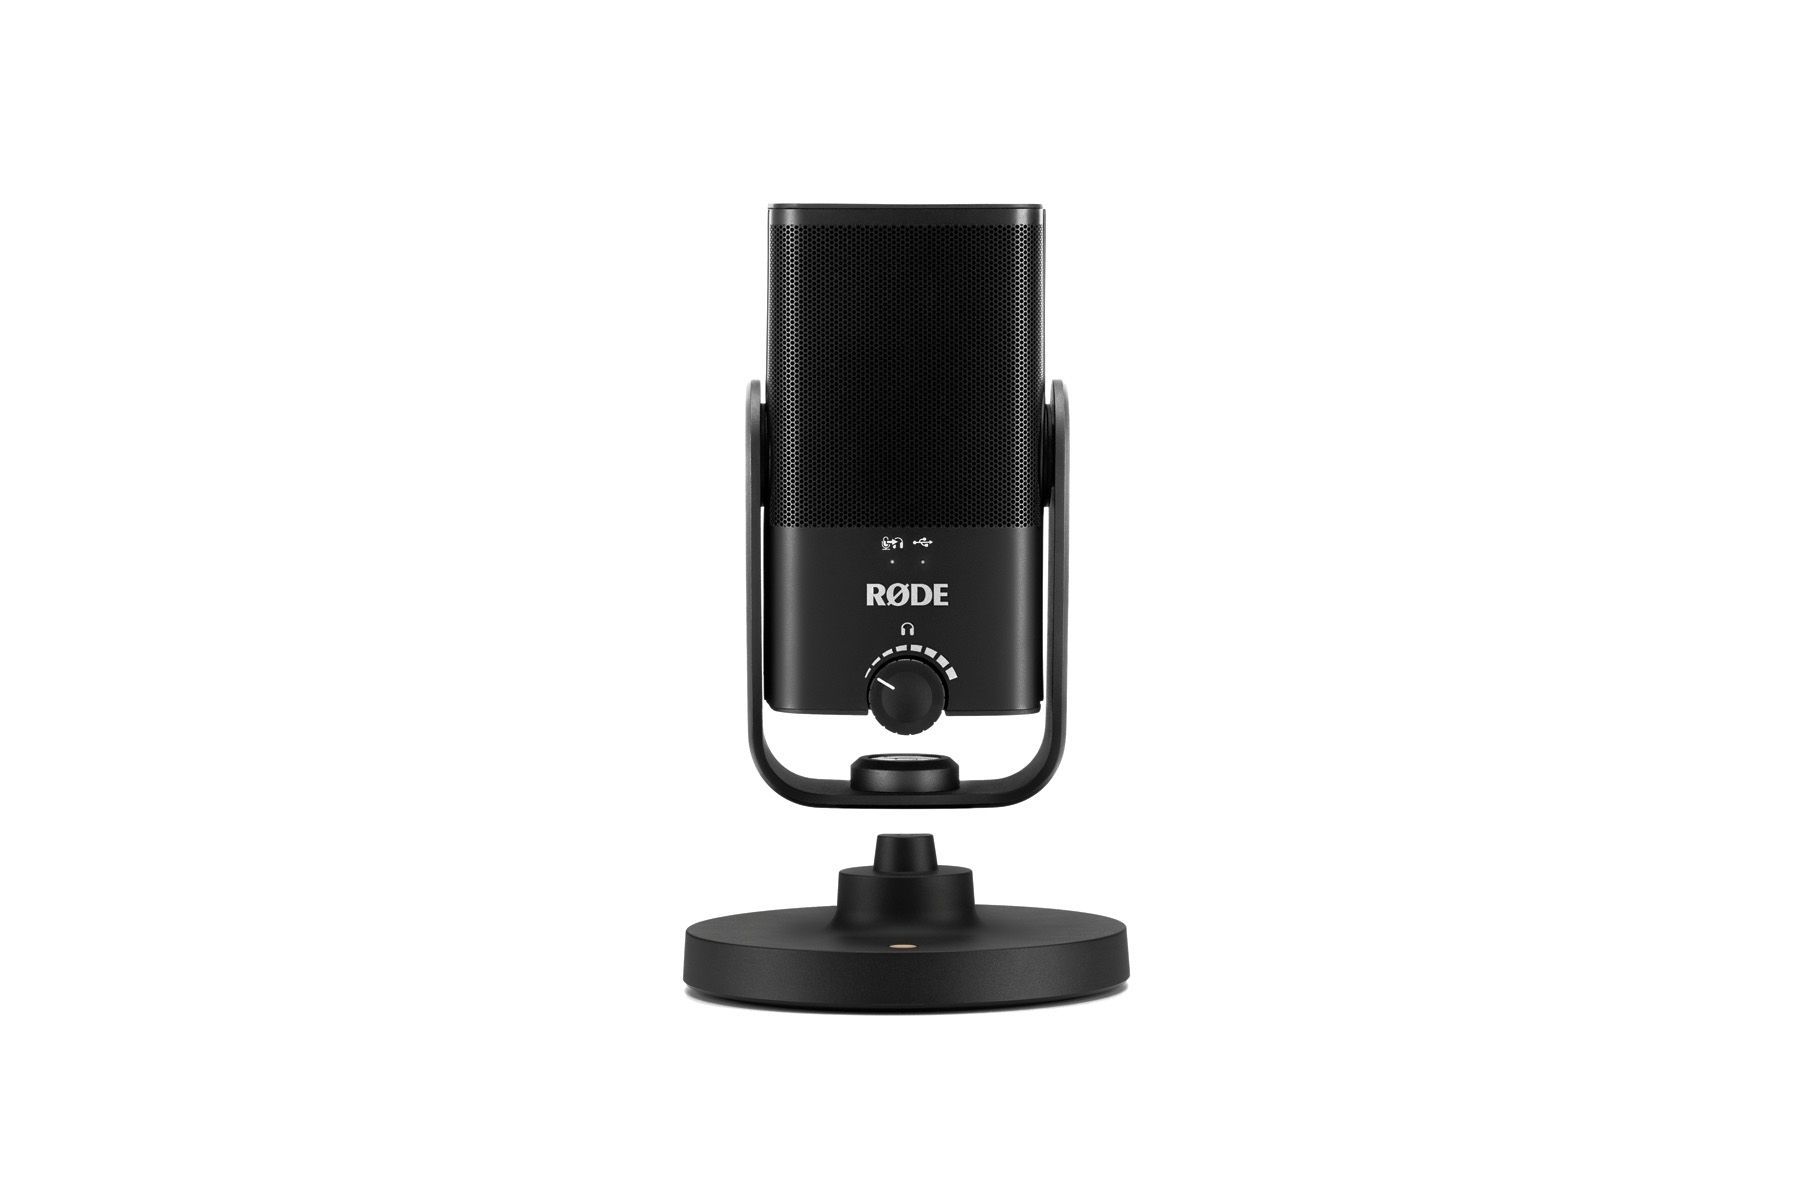 RODE NT-USB Mini USB-Studio-Kondensatormikrofon ideal zum Podcasten und Streamen